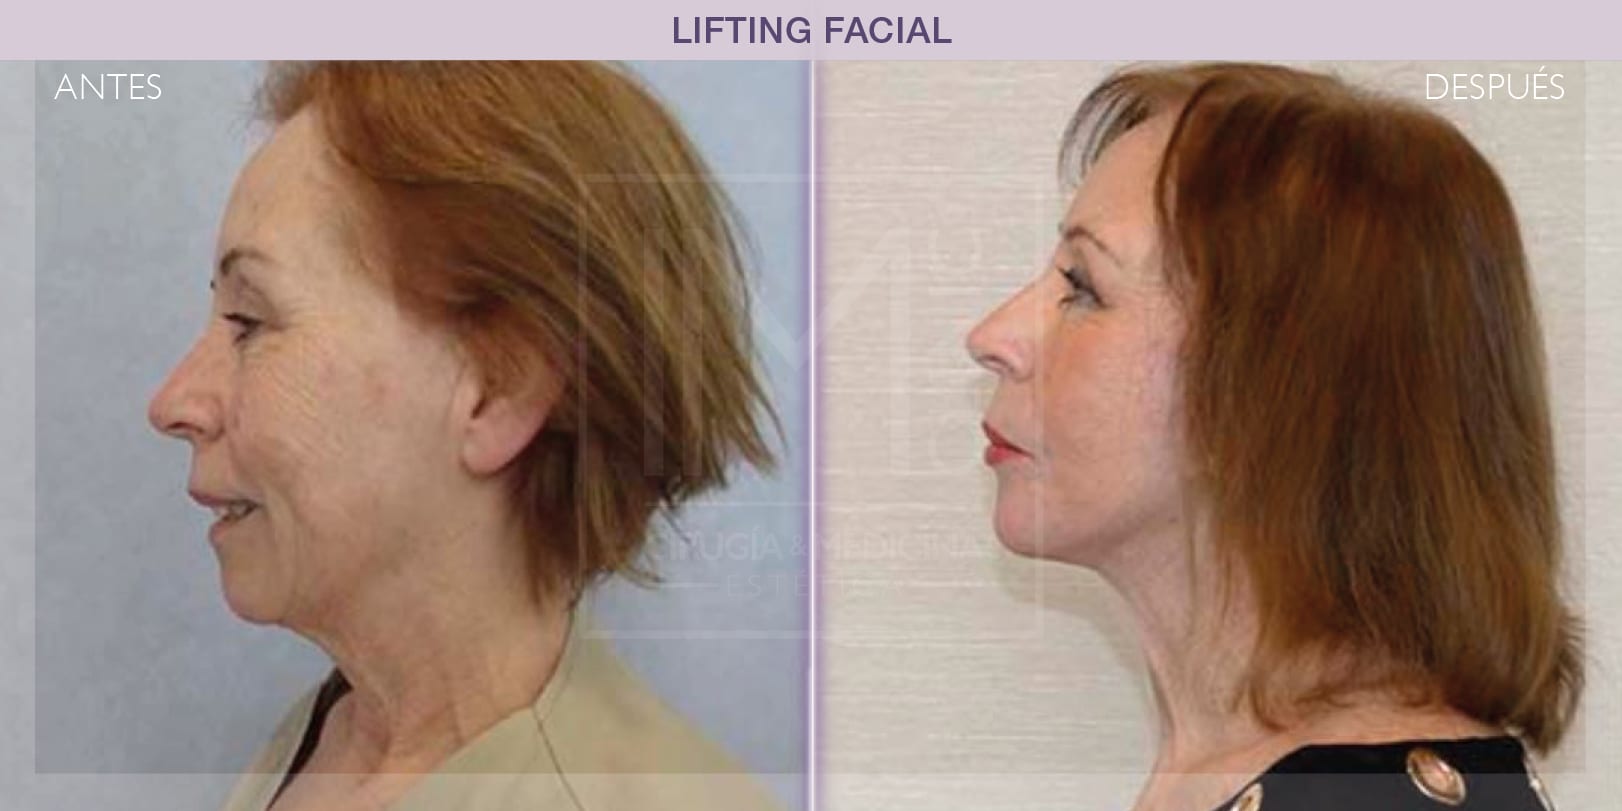 Transformación facial tras lifting